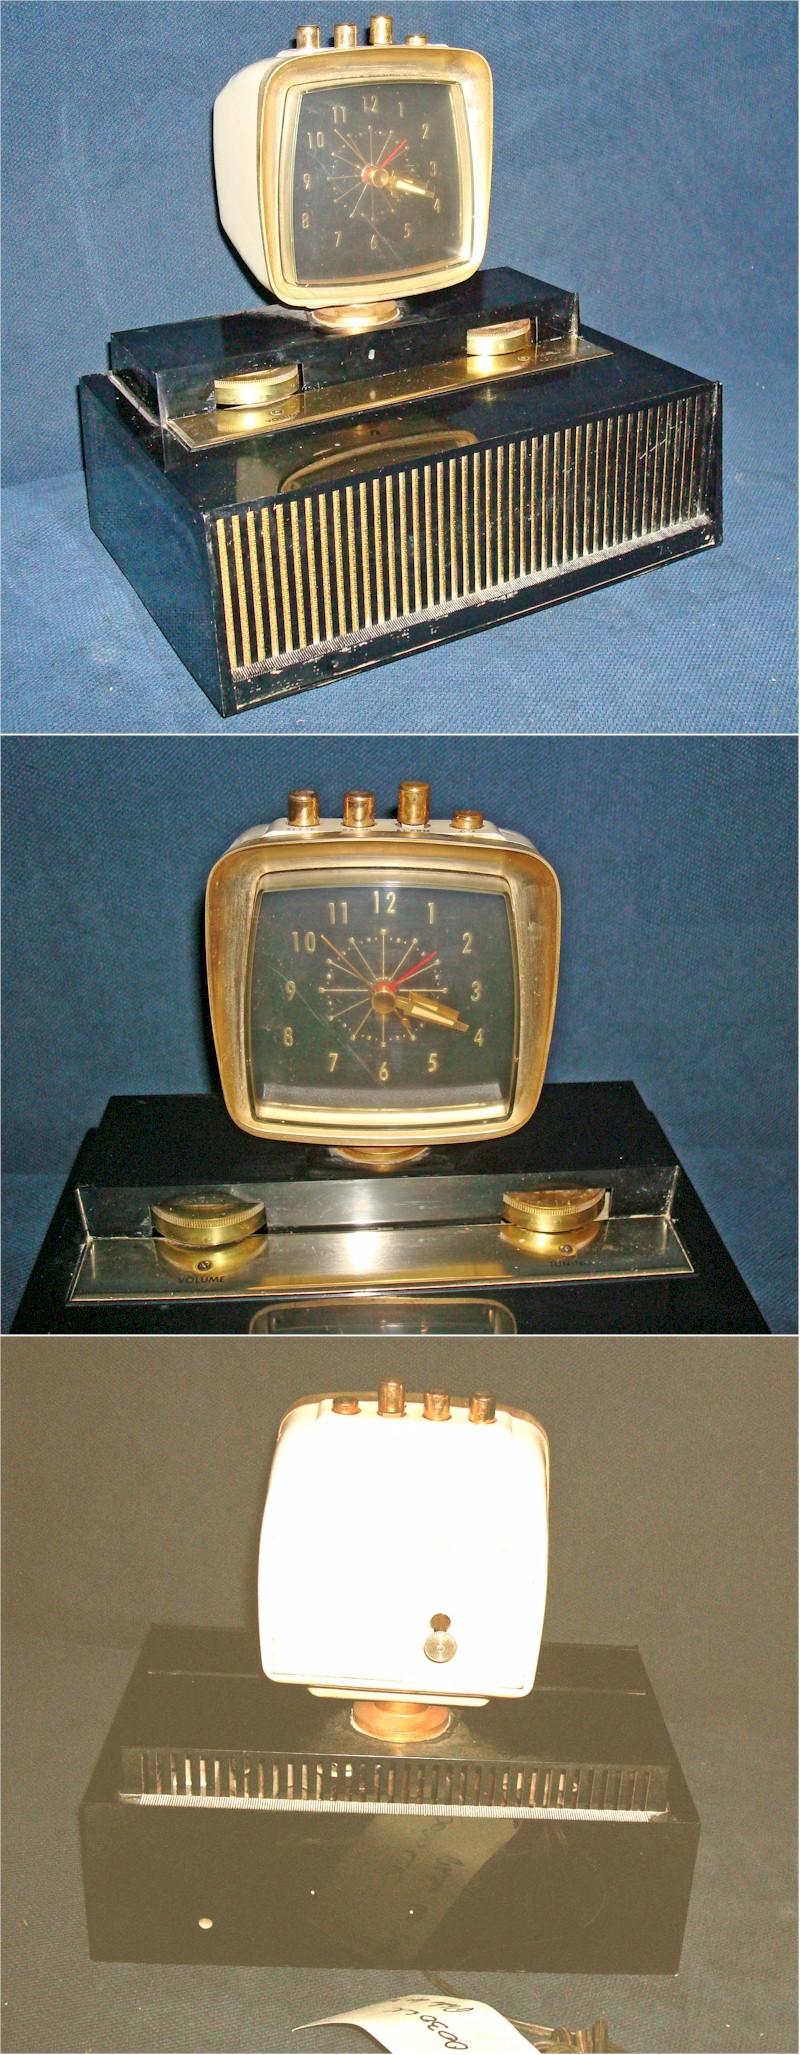 Philco Radio 60-765 "Predicta" Clock Radio (1960)